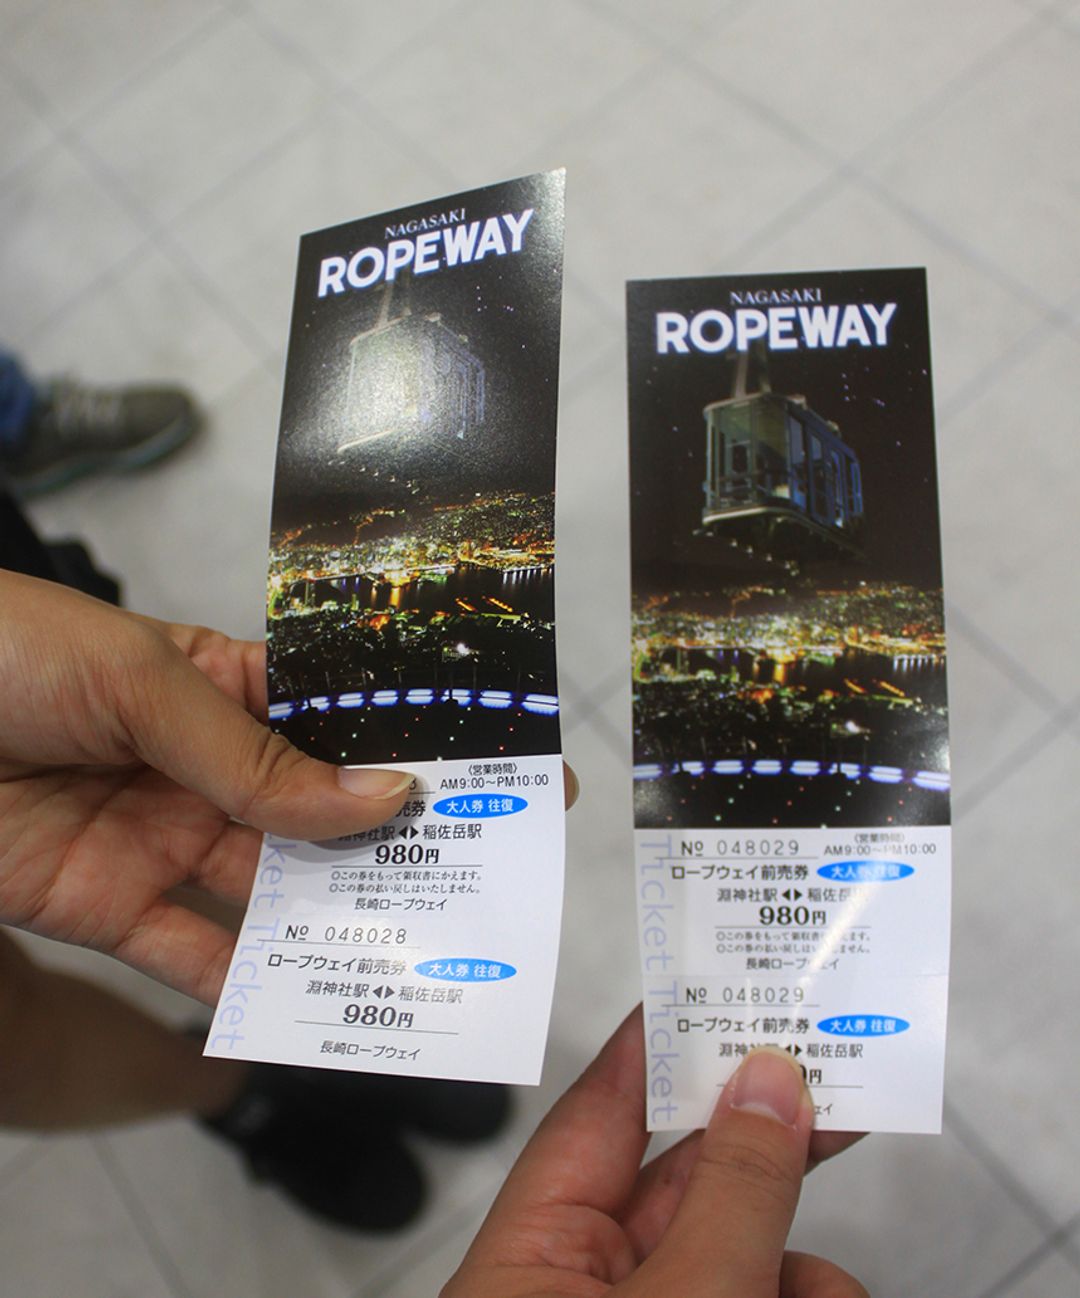 先在長崎觀光案內所買好纜車票